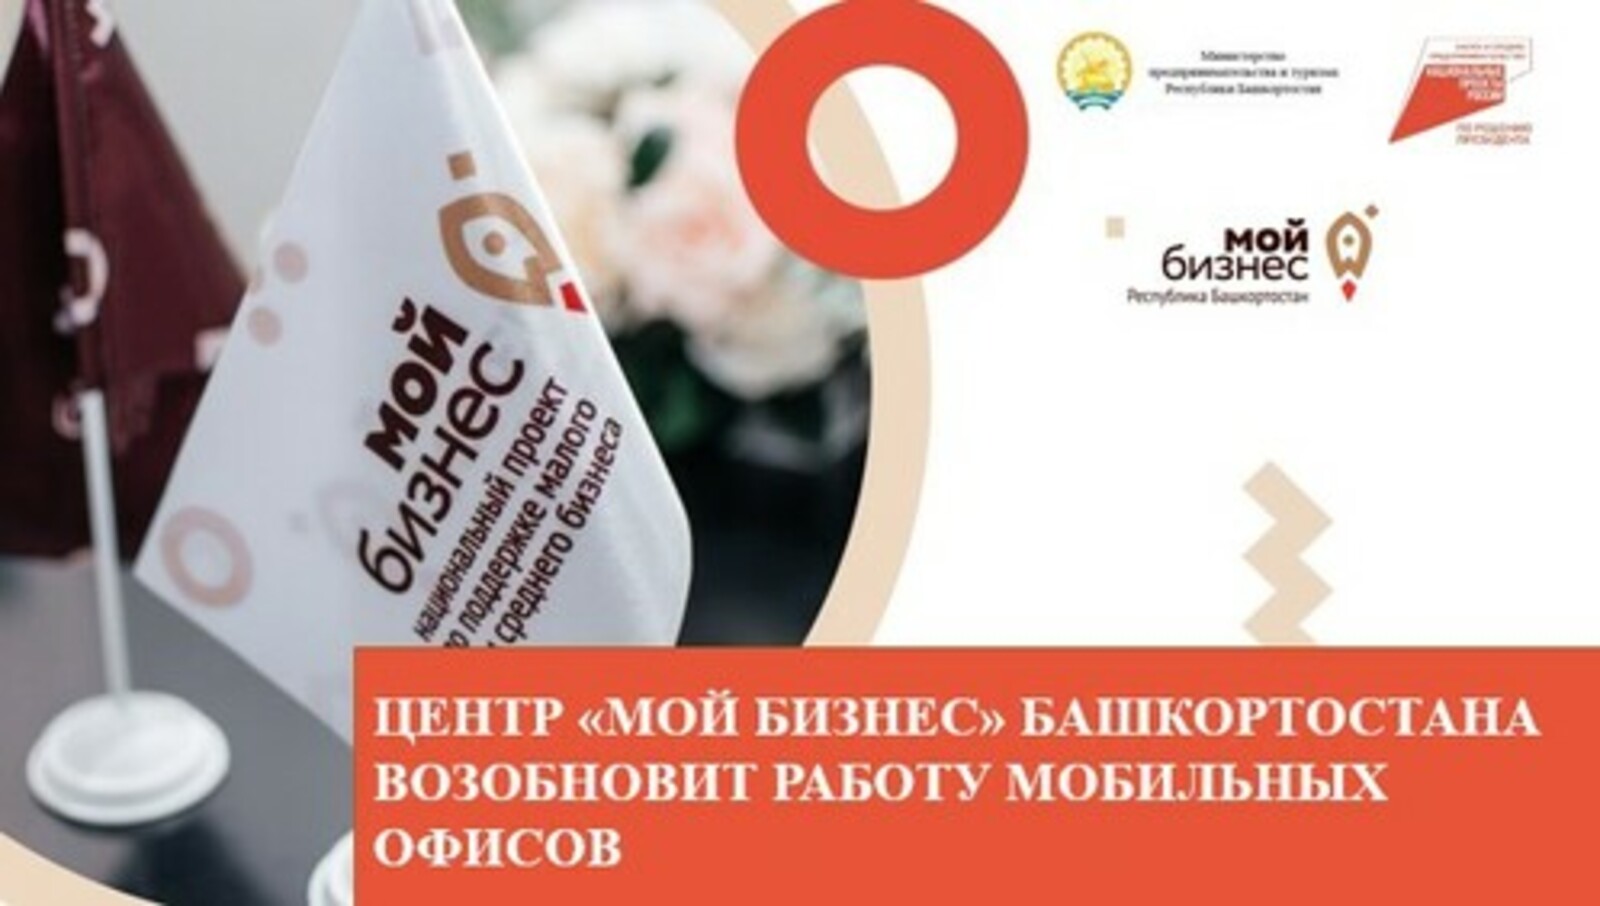 Центр «Мой бизнес» Башкортостана возобновит работу мобильных офисов